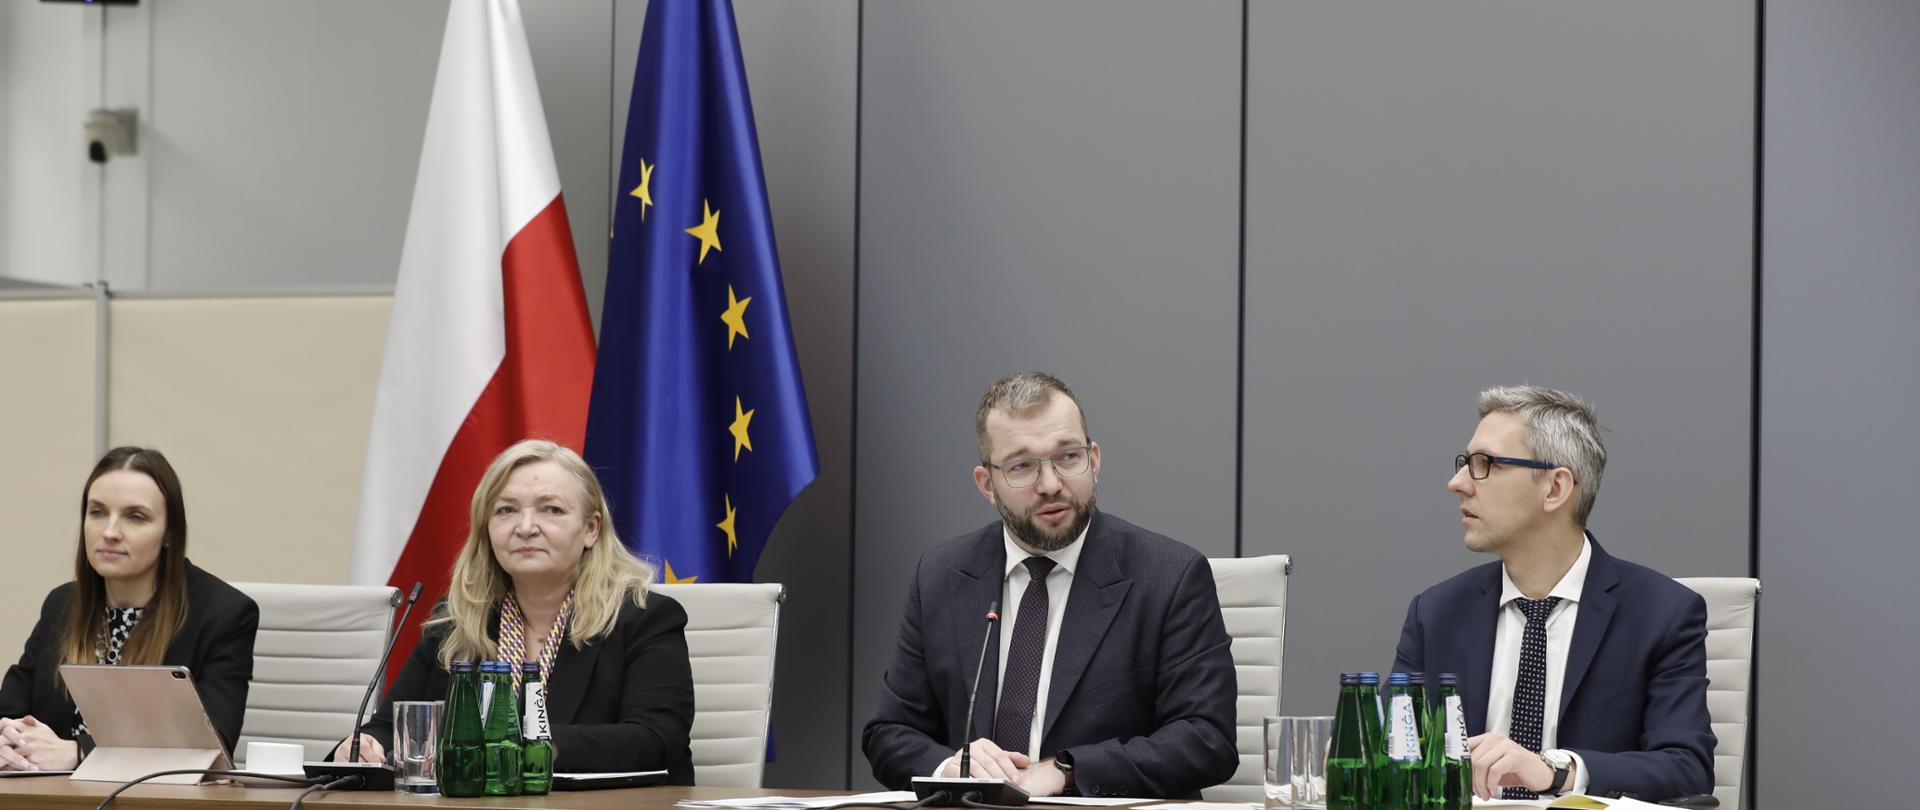 Cztery osoby siedzą na krzesłach obok siebie. Jako drugi z prawej strony siedzi minister Grzegorz Puda.